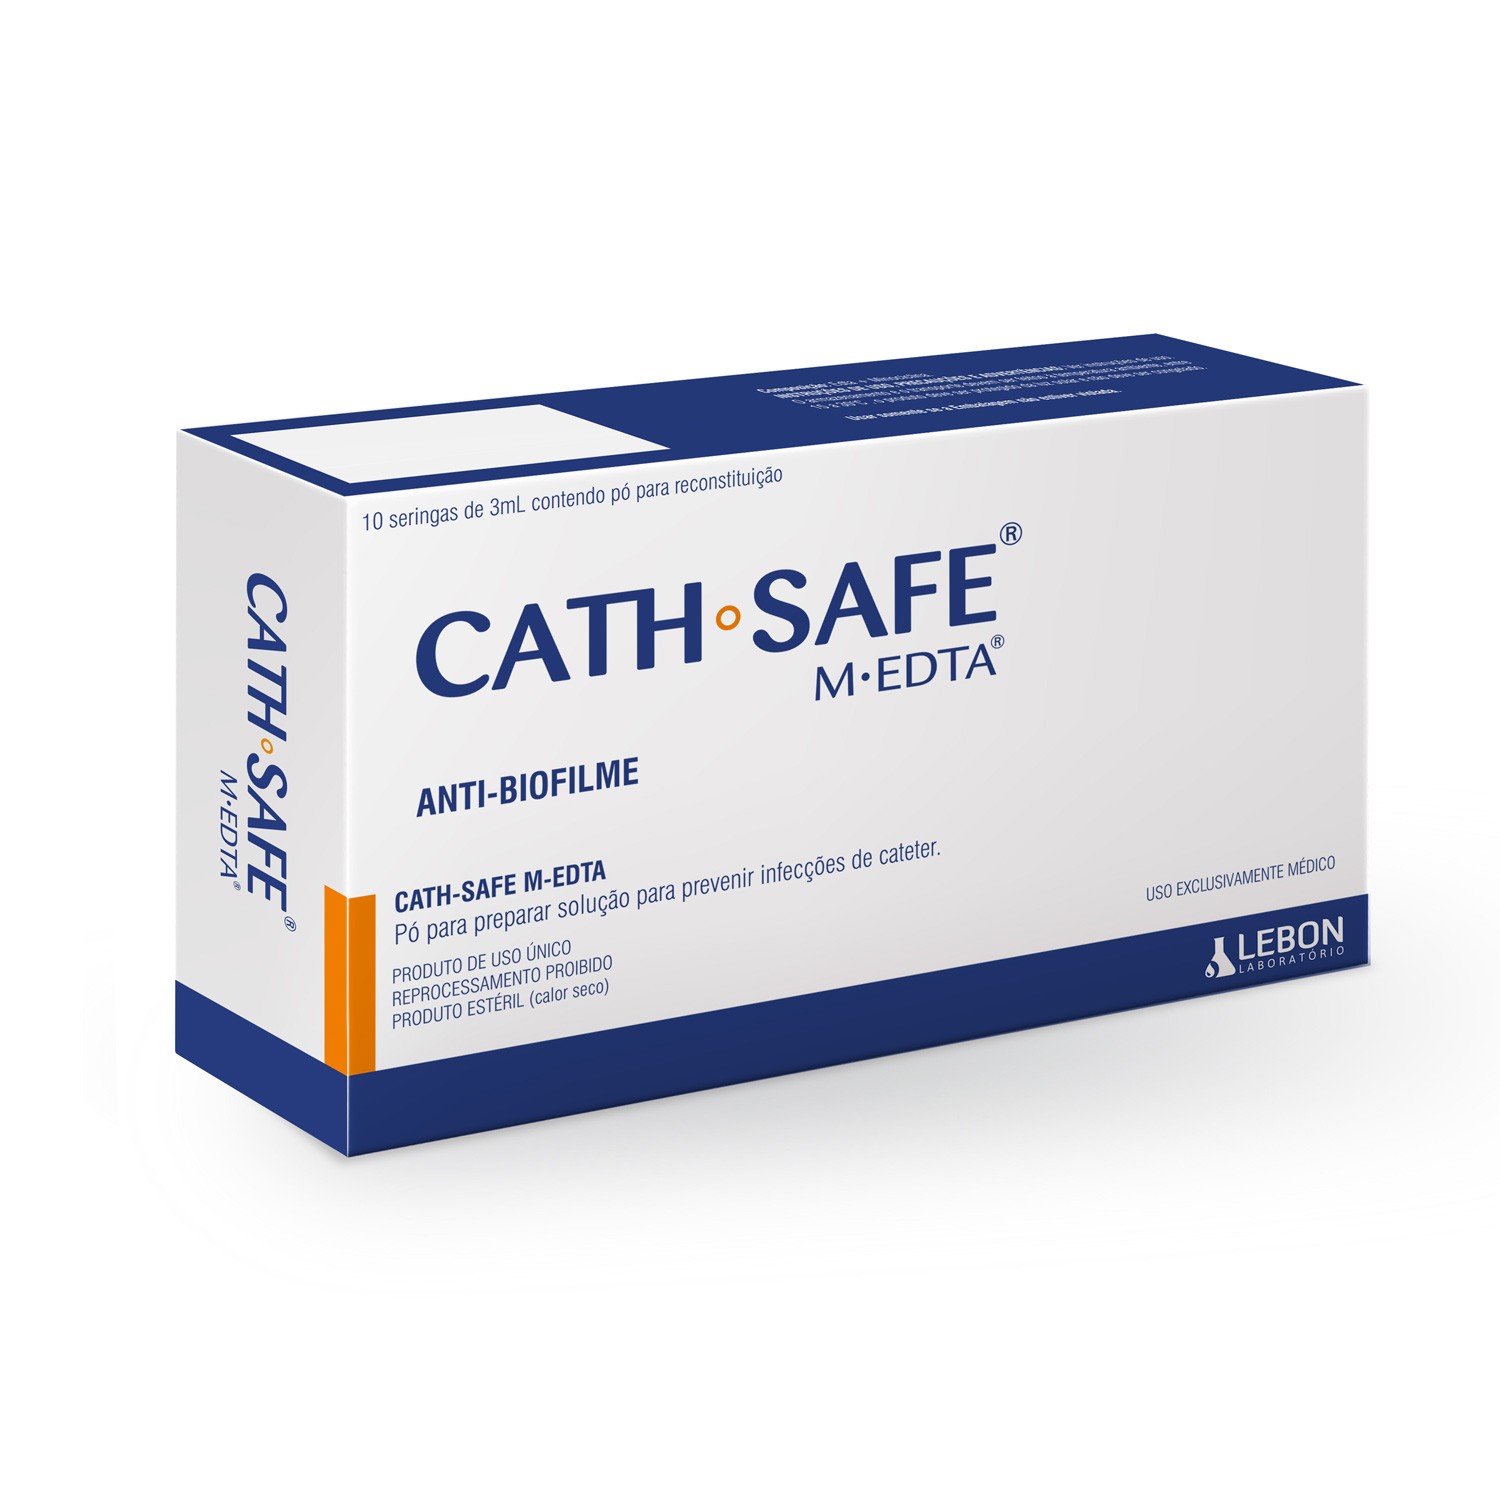 CATH-SAFE® M-EDTA – Prevenção de infecções em cateter e anti-biofilme [Caixa com 10 seringas]